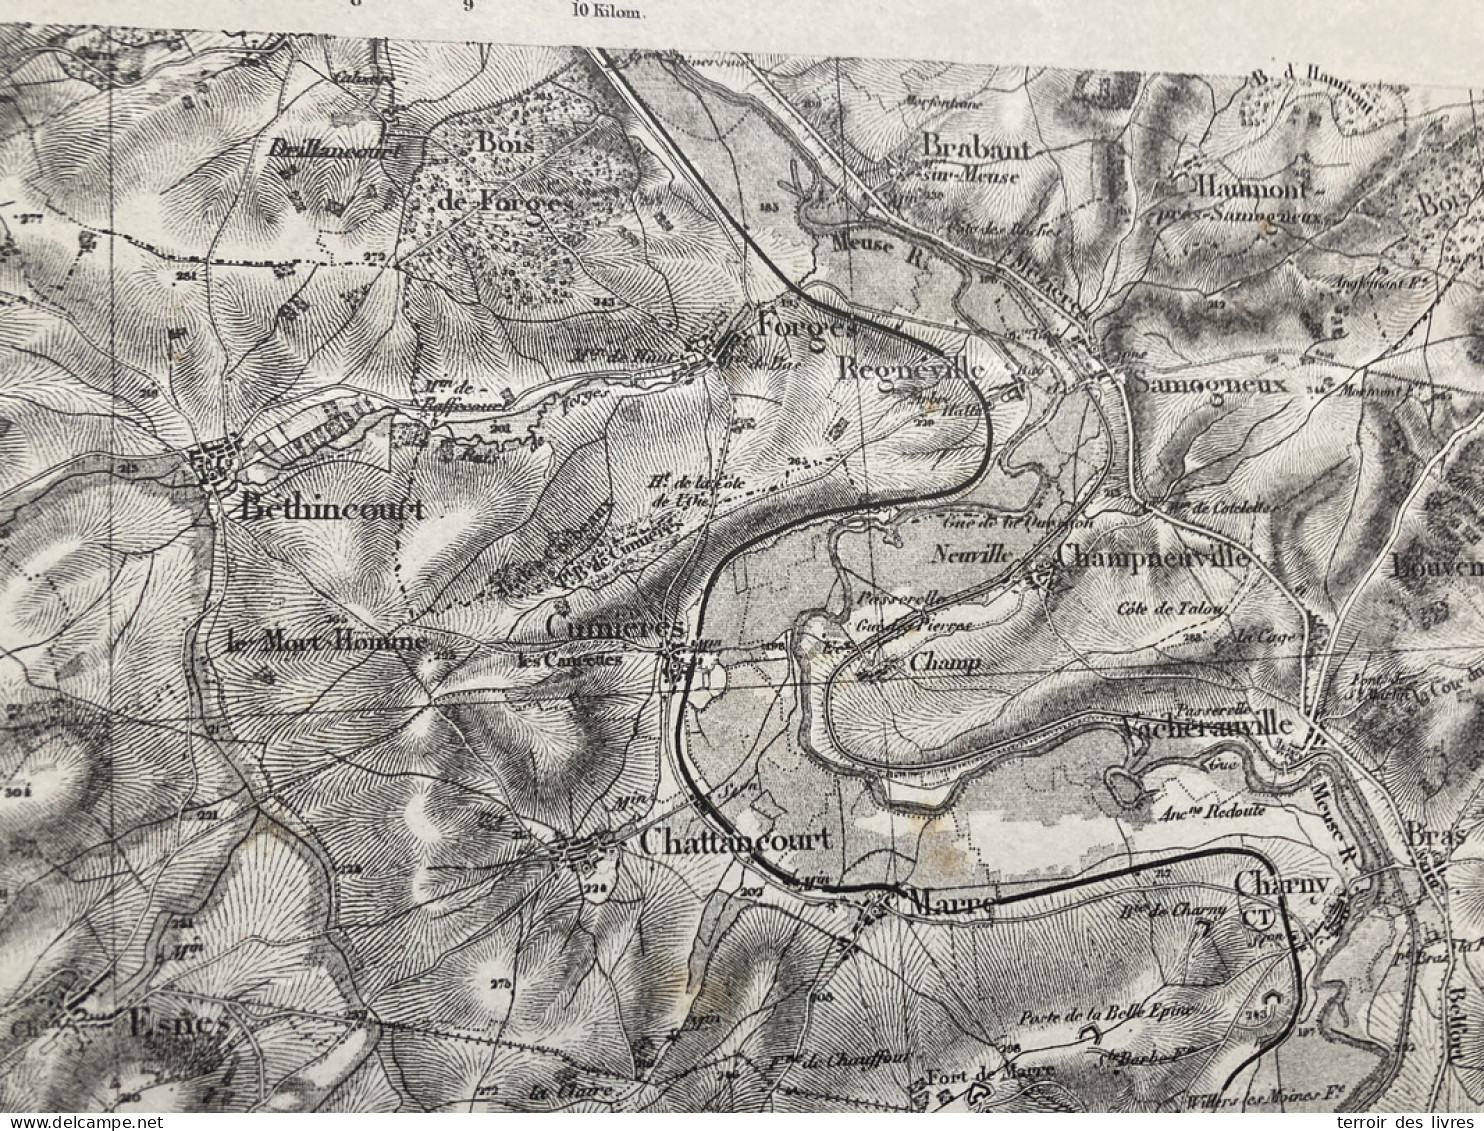 Carte état Major VERDUN S.E. 1895 33x50cm ESNES EN ARGONNE MONTZEVILLE CHATTANCOURT MALANCOURT BETHELAINVILLE BETHINCOUR - Landkarten